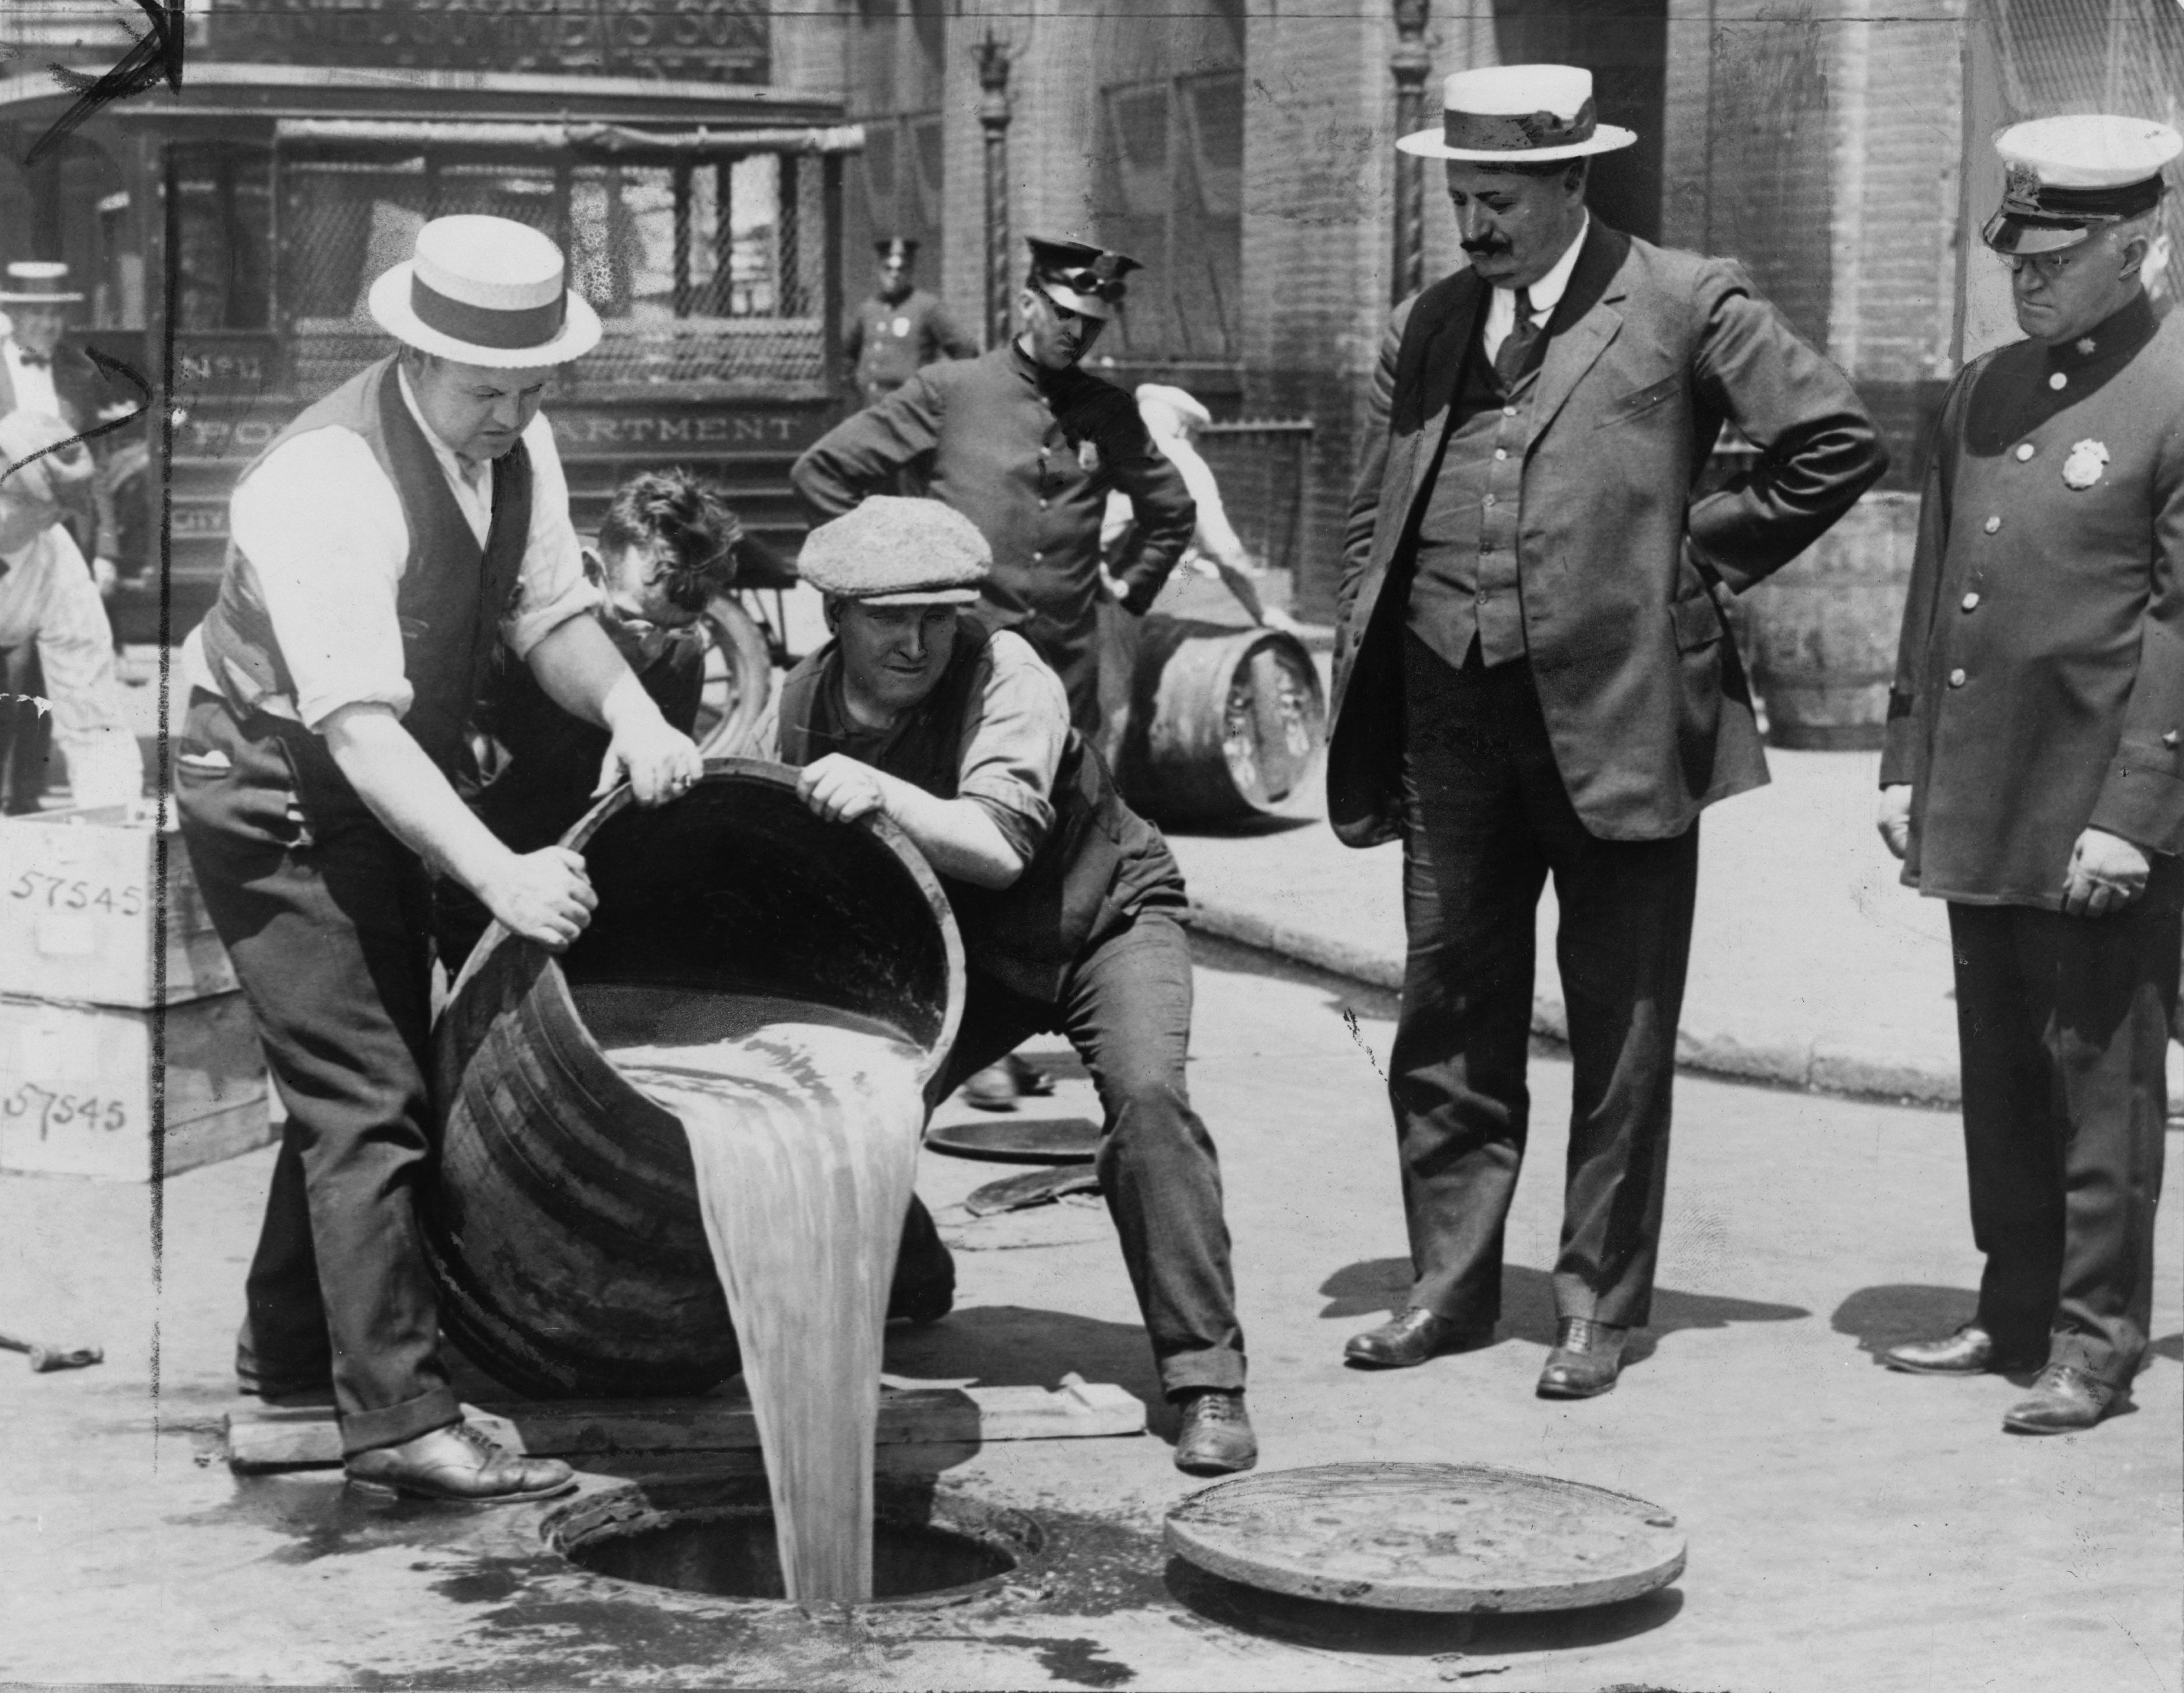 Prohibicja w USA. Jak Amerykanie pili alkohol w czasach zakazów? | Portal  historyczny Histmag.org - historia dla każdego!